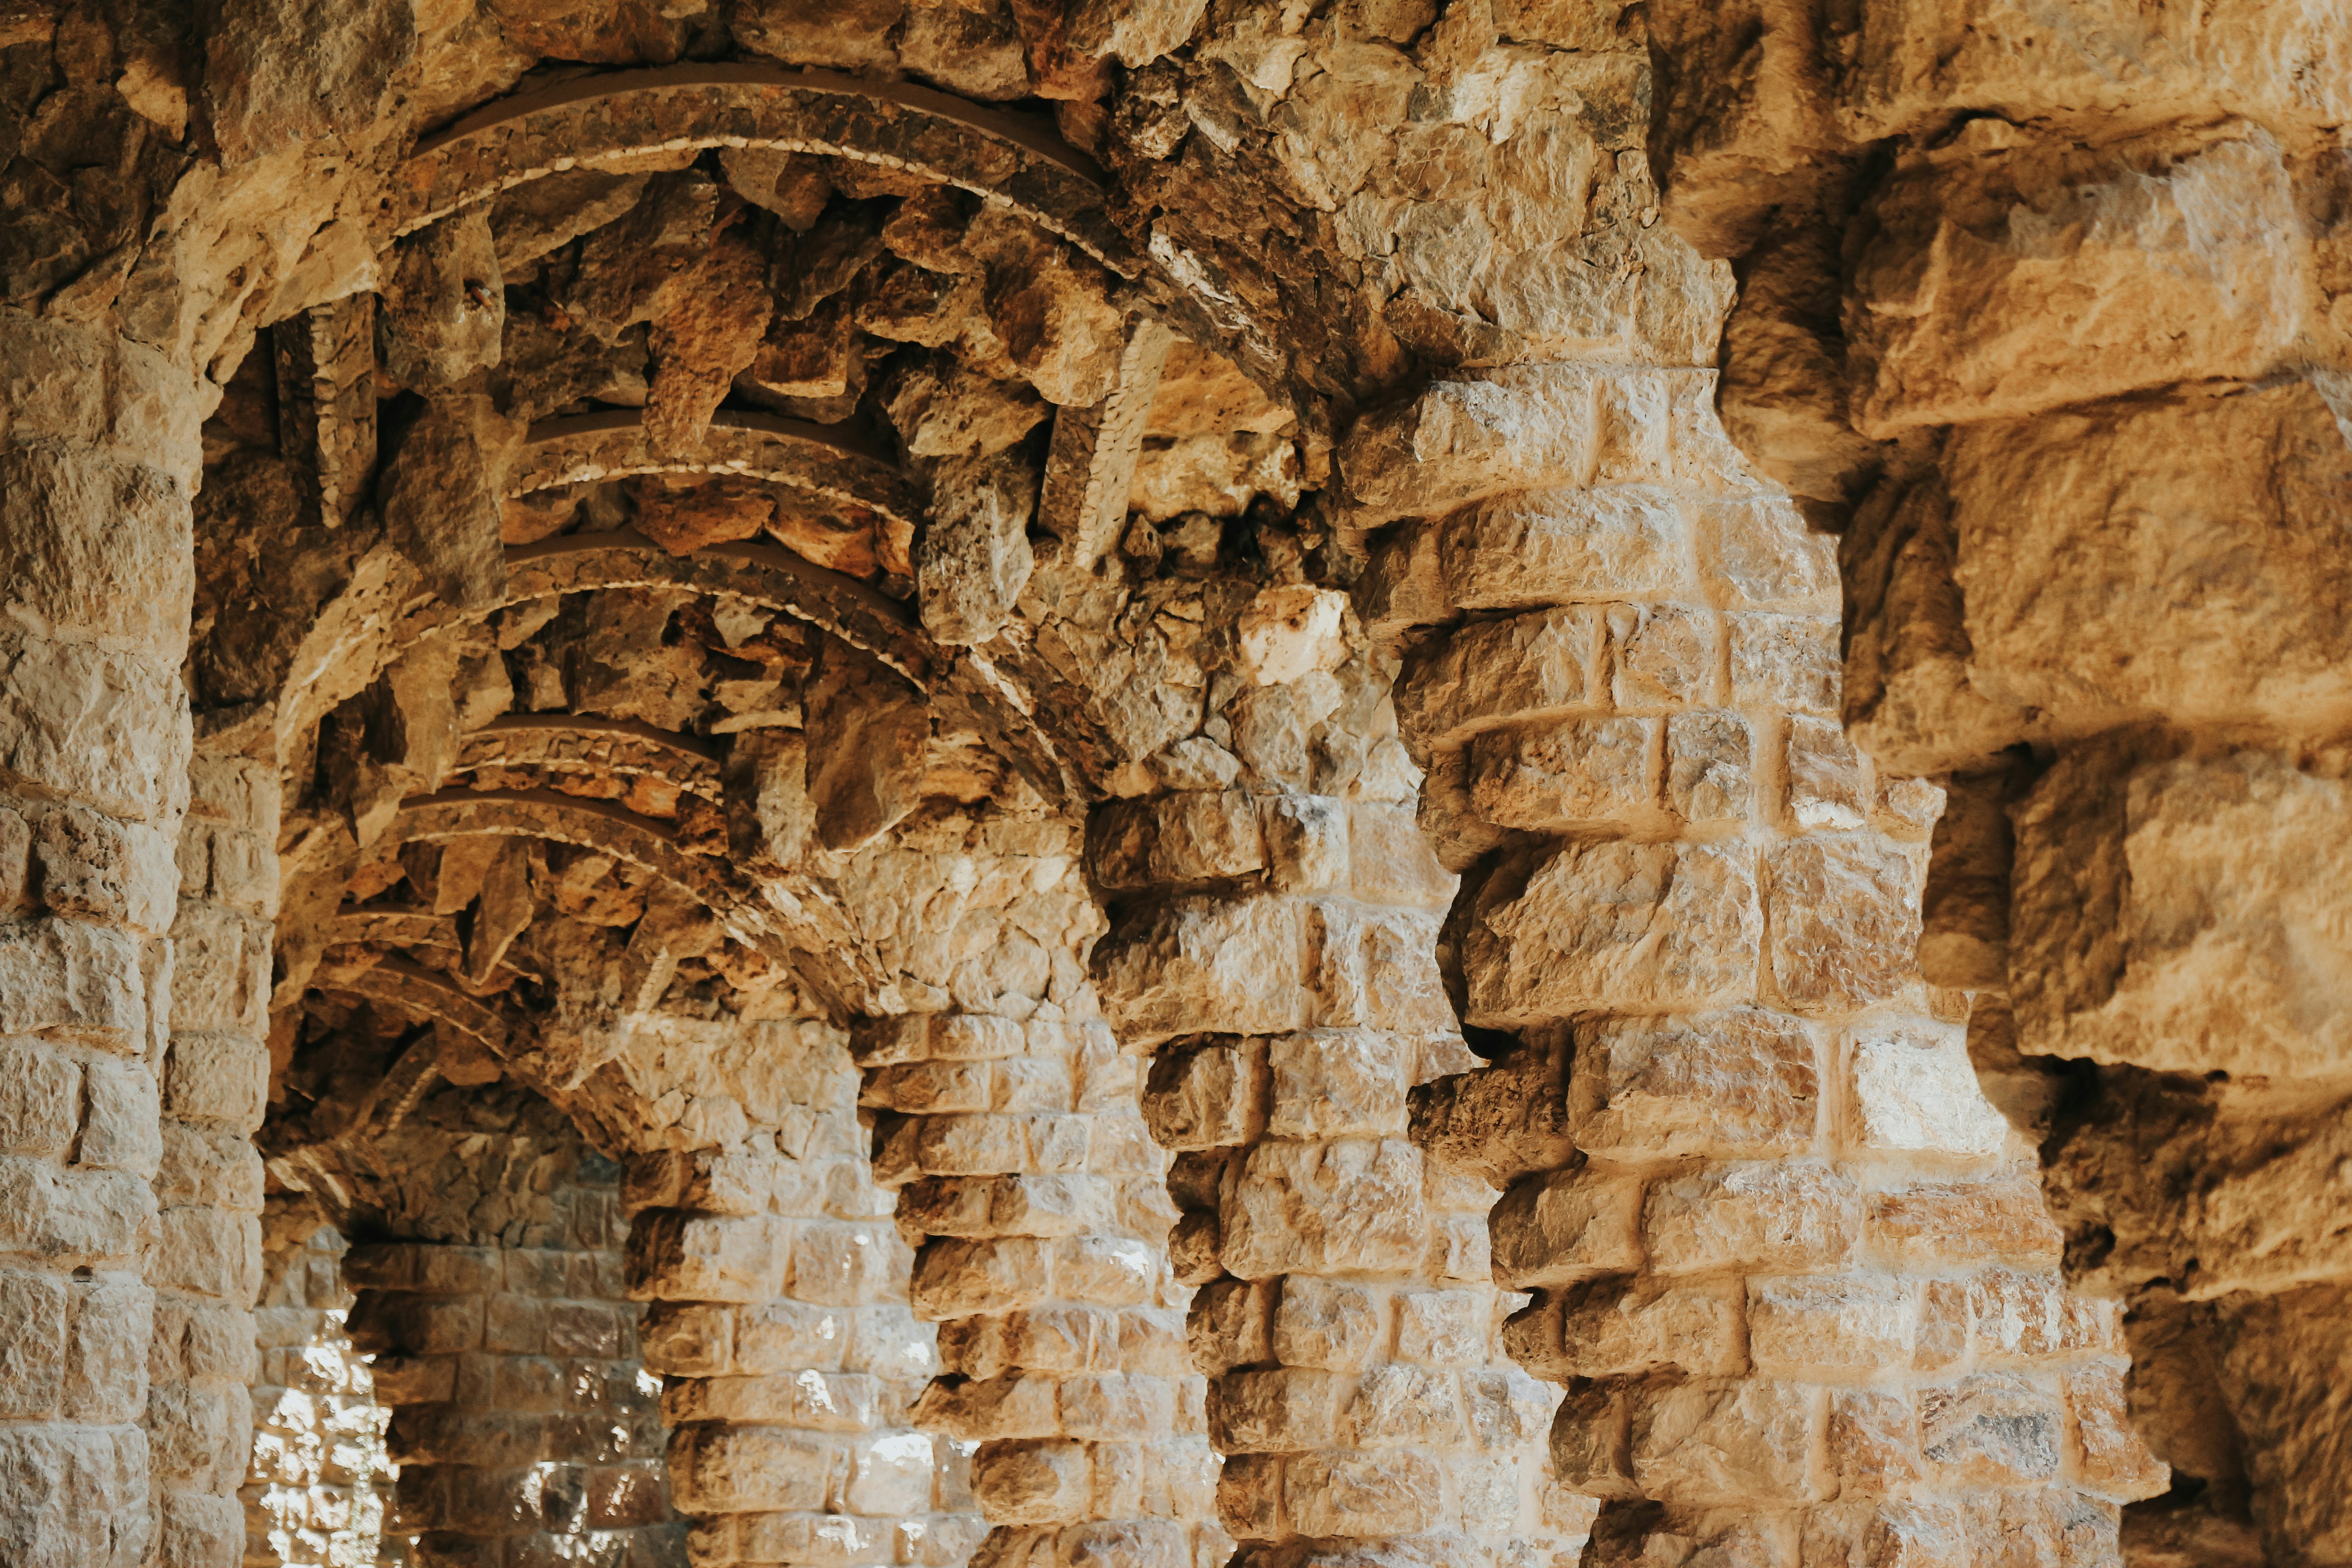 Rock columns in a passageway at Park Guell